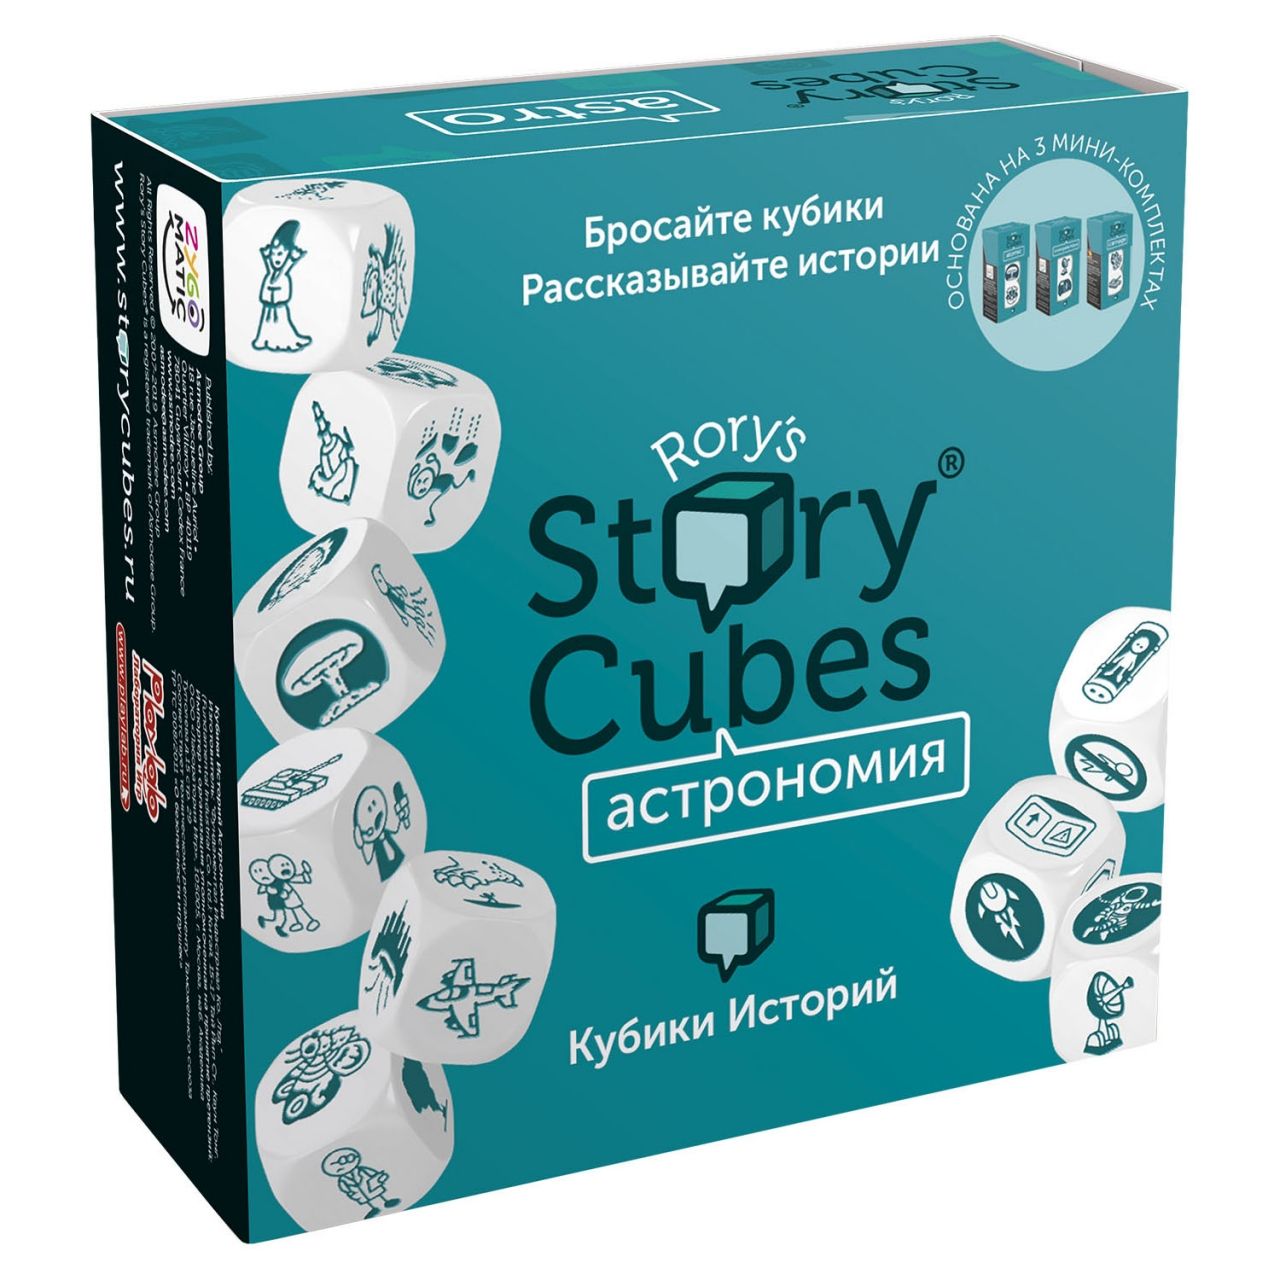 Настольная игра RORYS STORY CUBES RSC31 кубики историй Астрономия настольная игра кубики историй фантазия